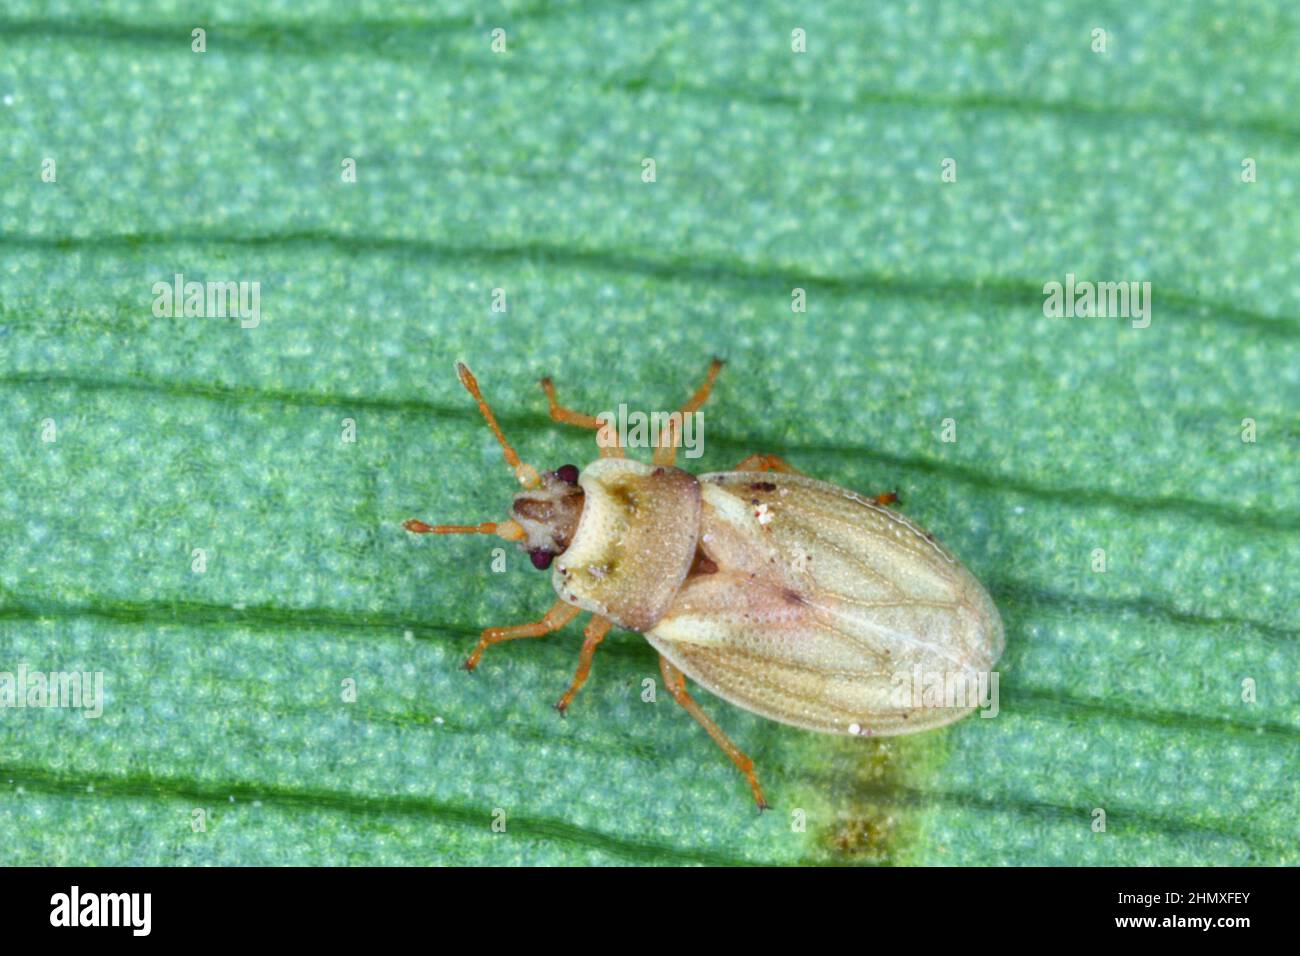 Piesma anche Parapiesma quadratum (Piesmidae) chiamato anche barbabietola pizzo-bug o foglia di barbabietola è un vero bug, importante parassita delle colture di barbabietole, la coltivazione. Foto Stock